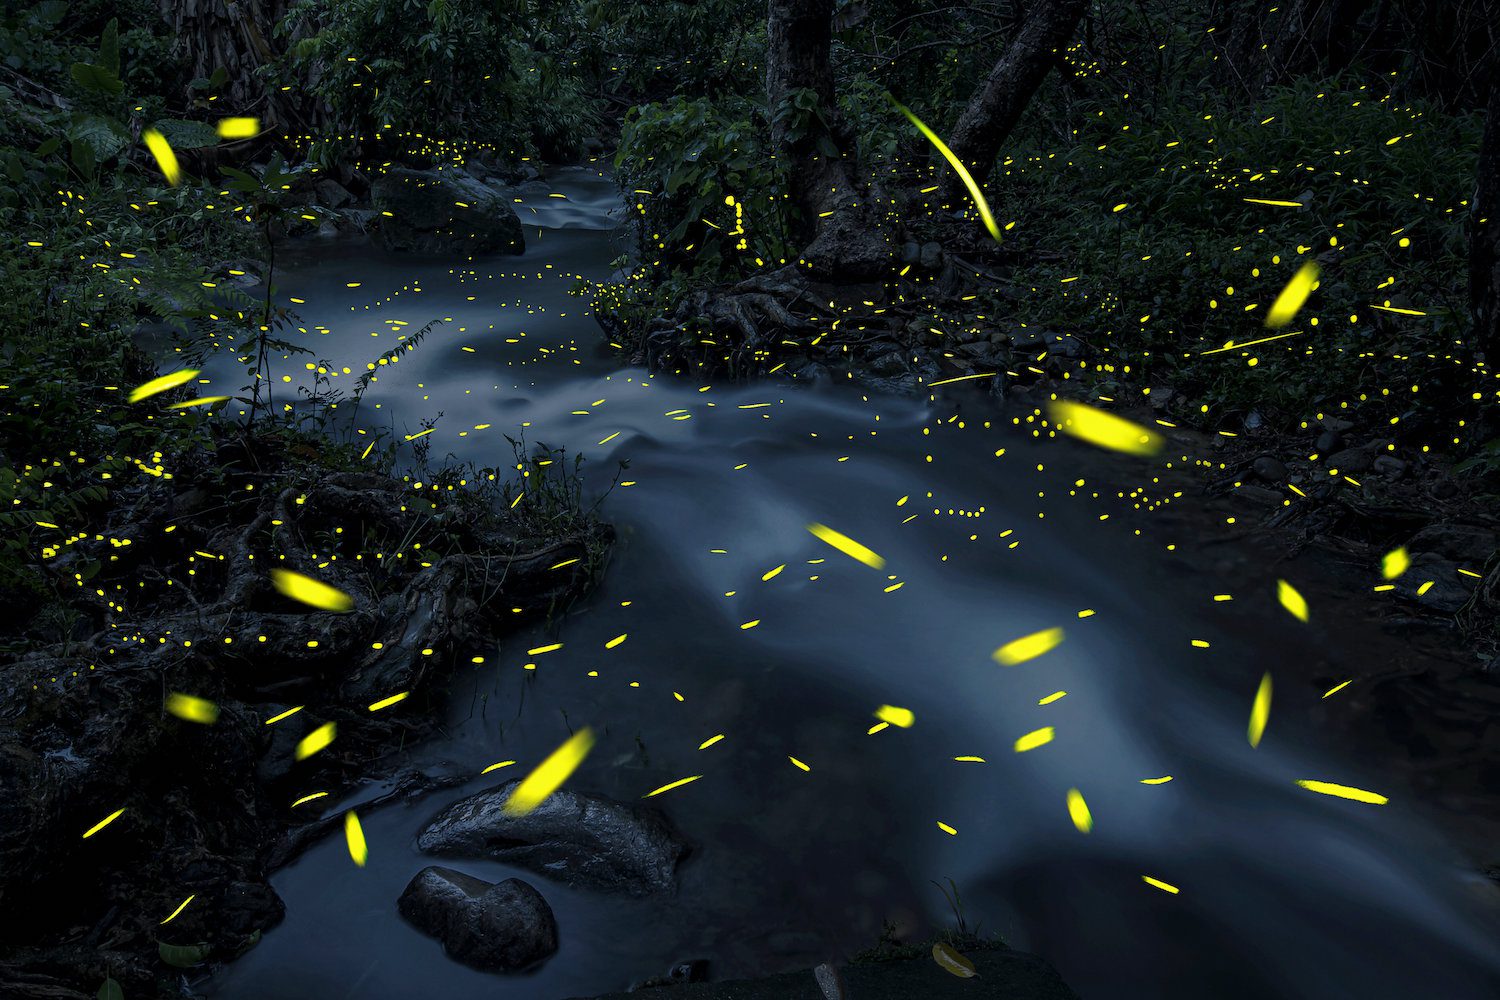 Haikun Liang - 'Glowworm', 2022 - China